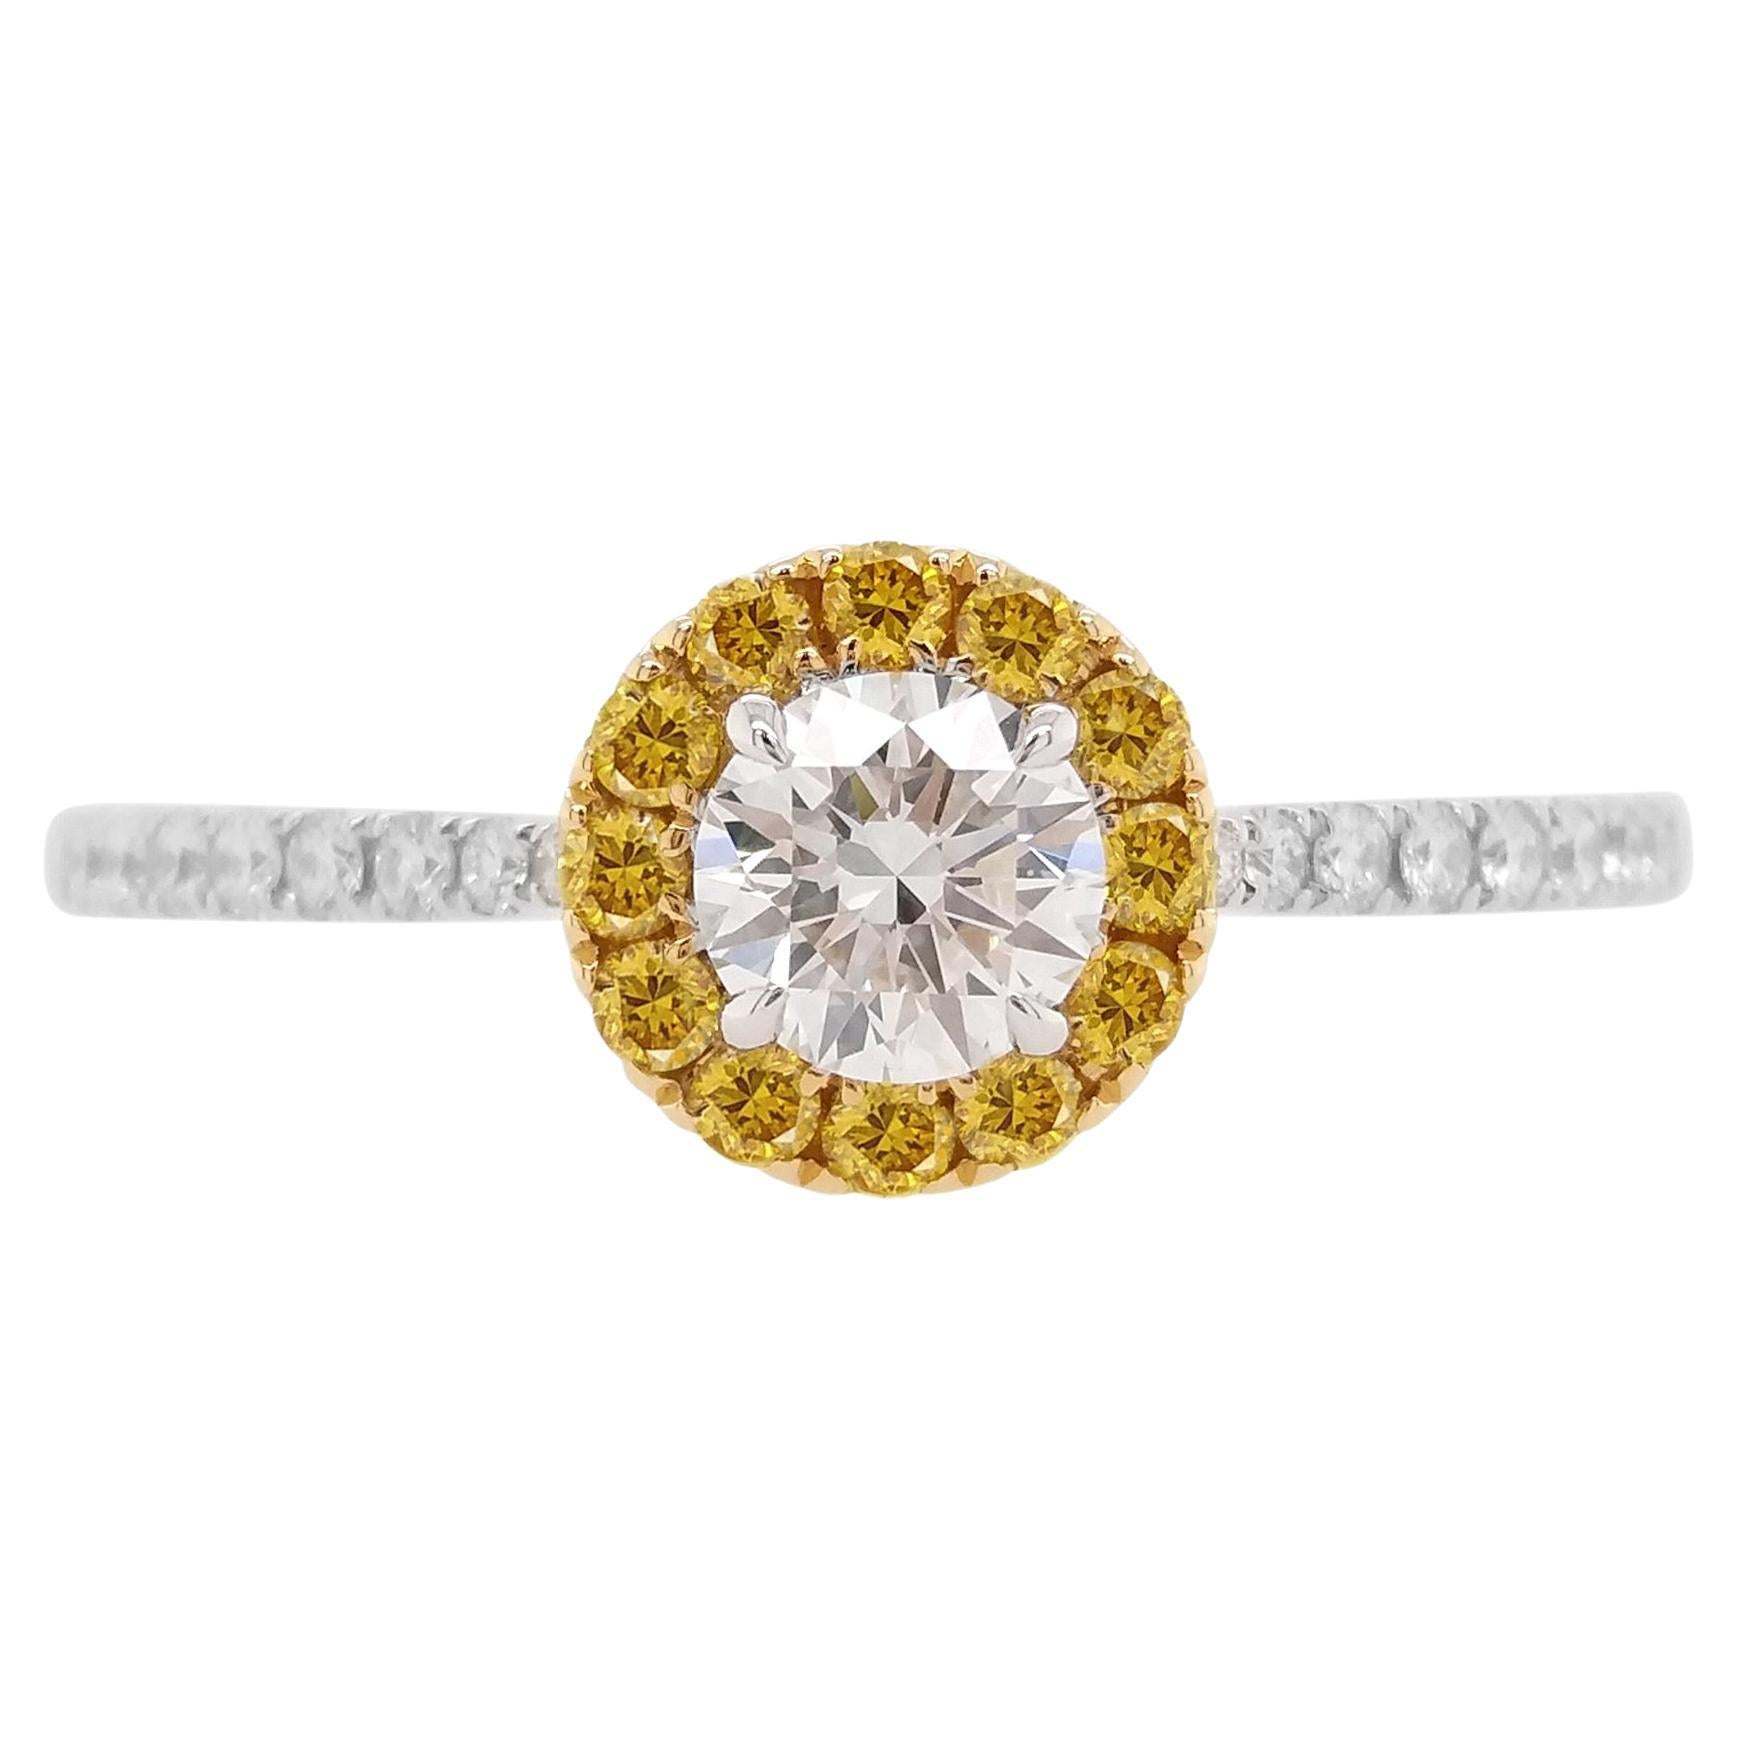 Verlobungsring, Gia zertifizierter weißer Diamant, orangefarbener Diamant, 18 Karat Gold